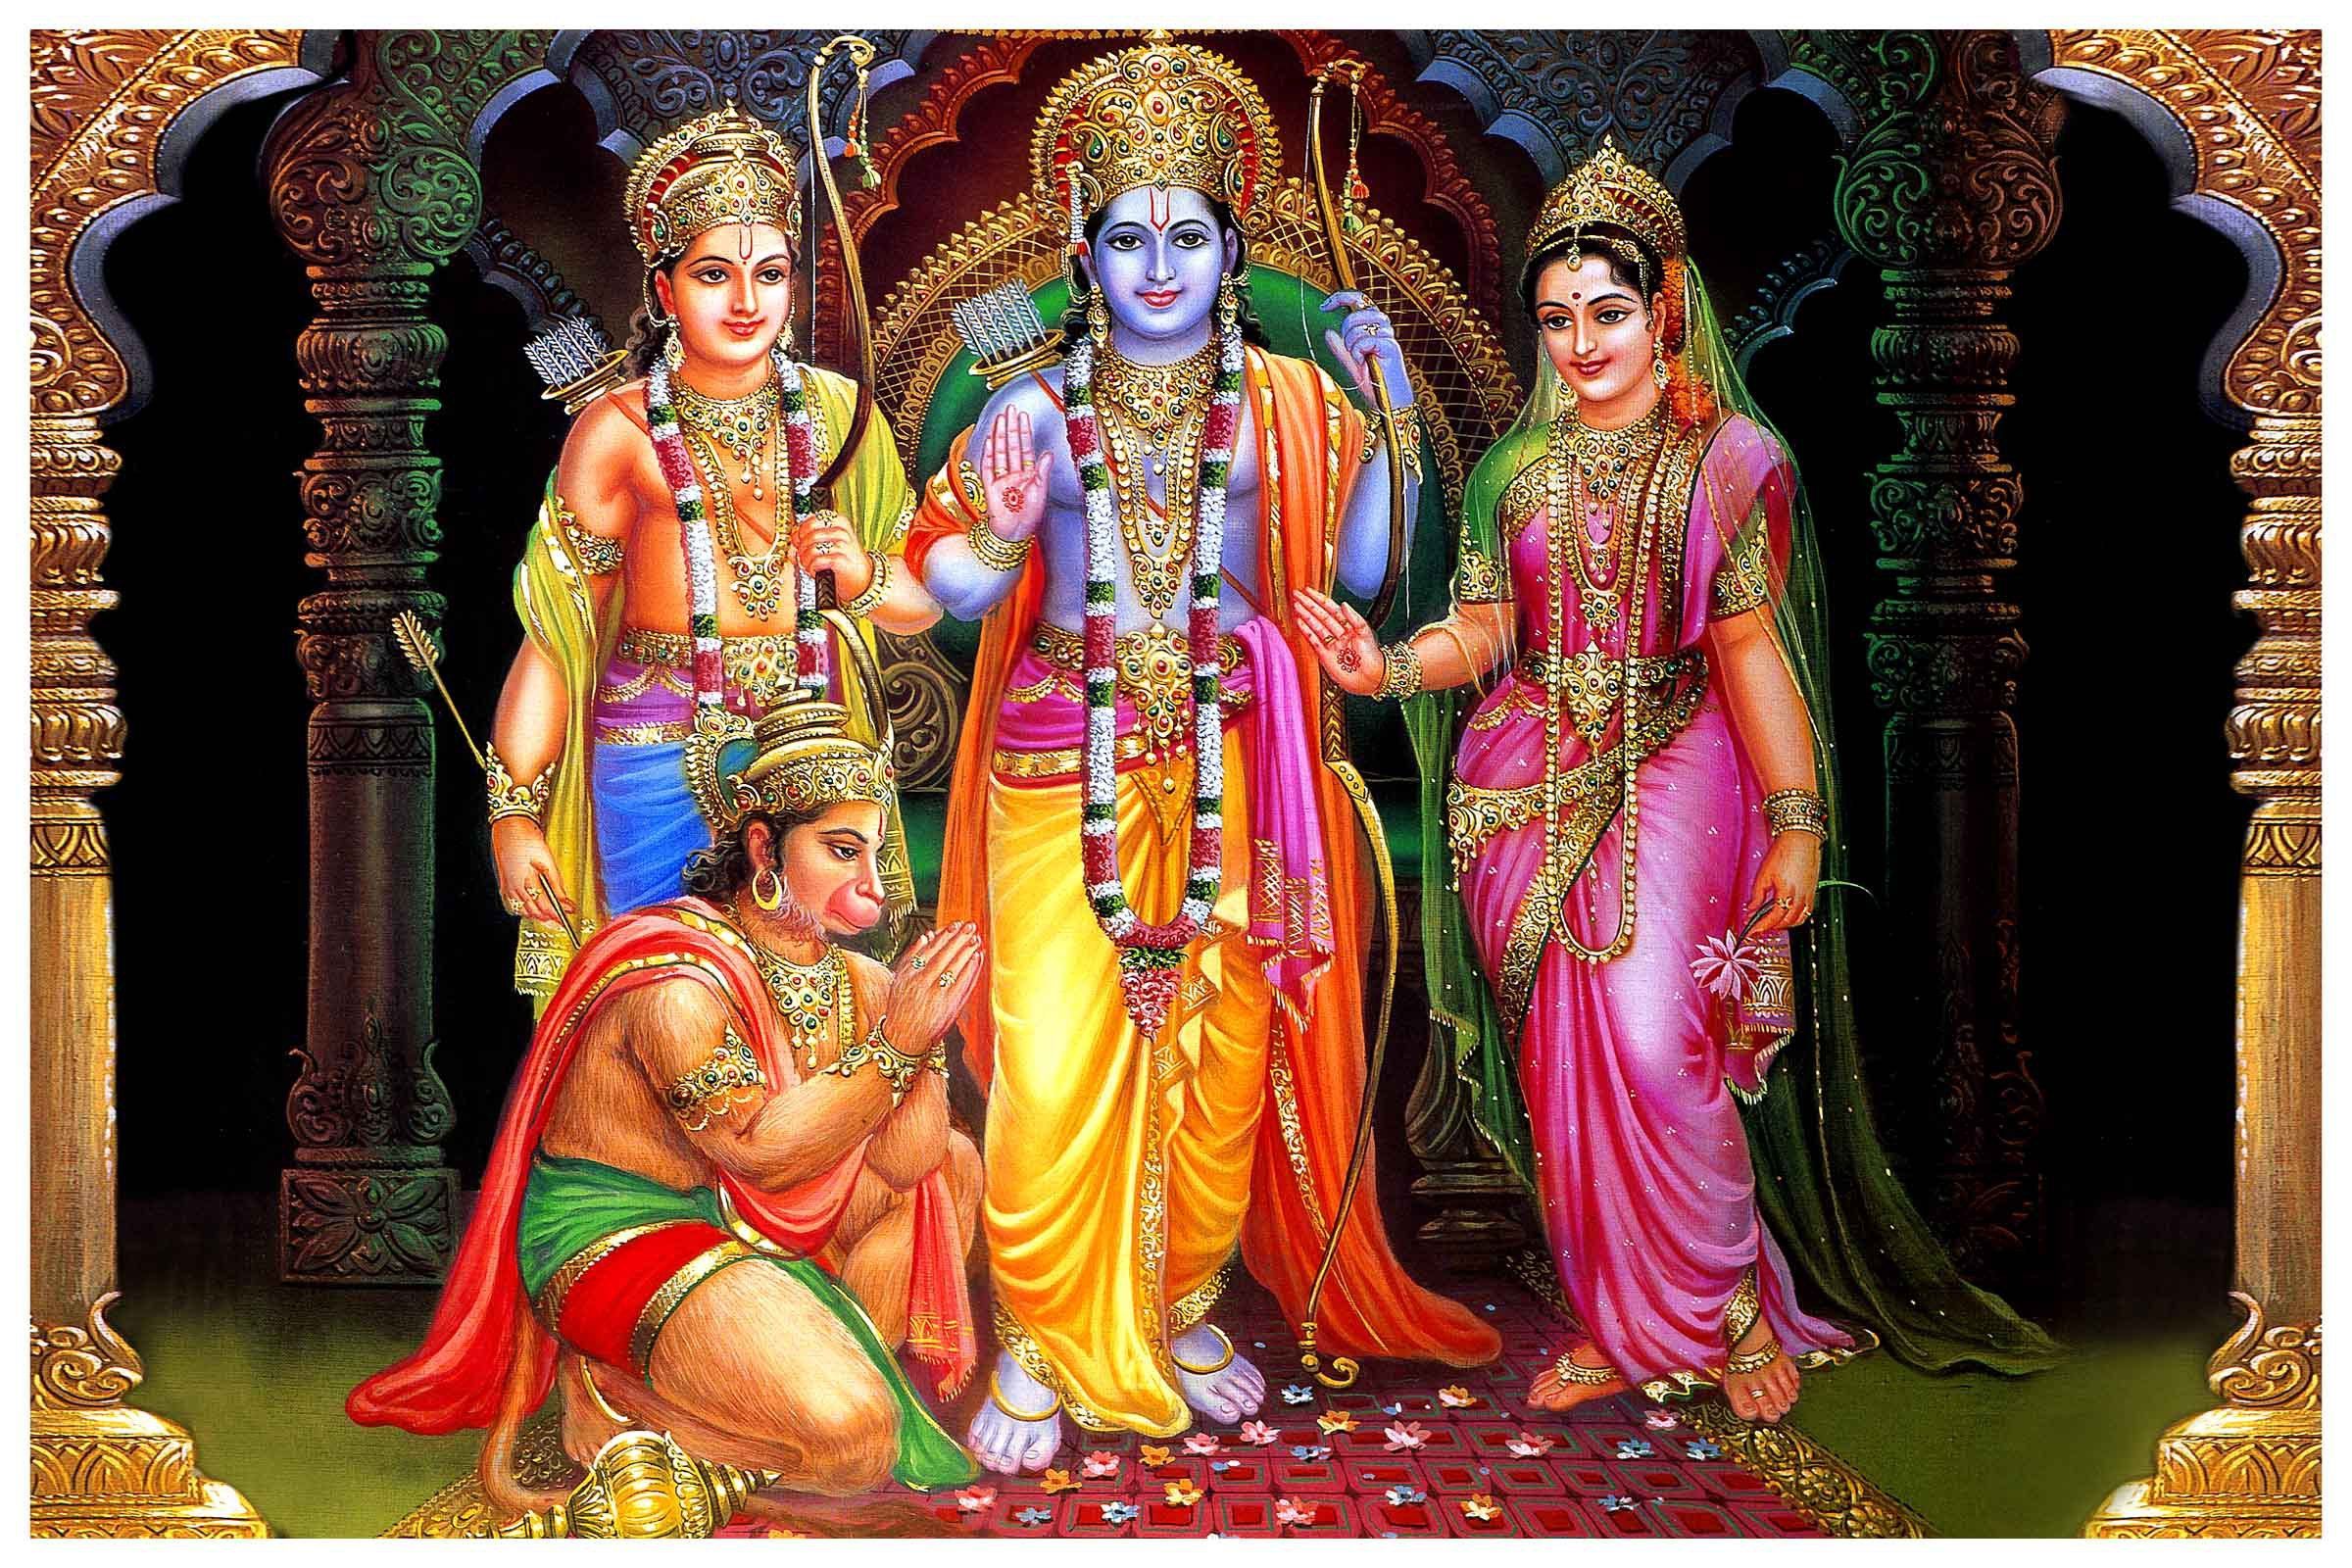 + Shri Ram ji Image Wallpaper Picture Pics Photo Latest